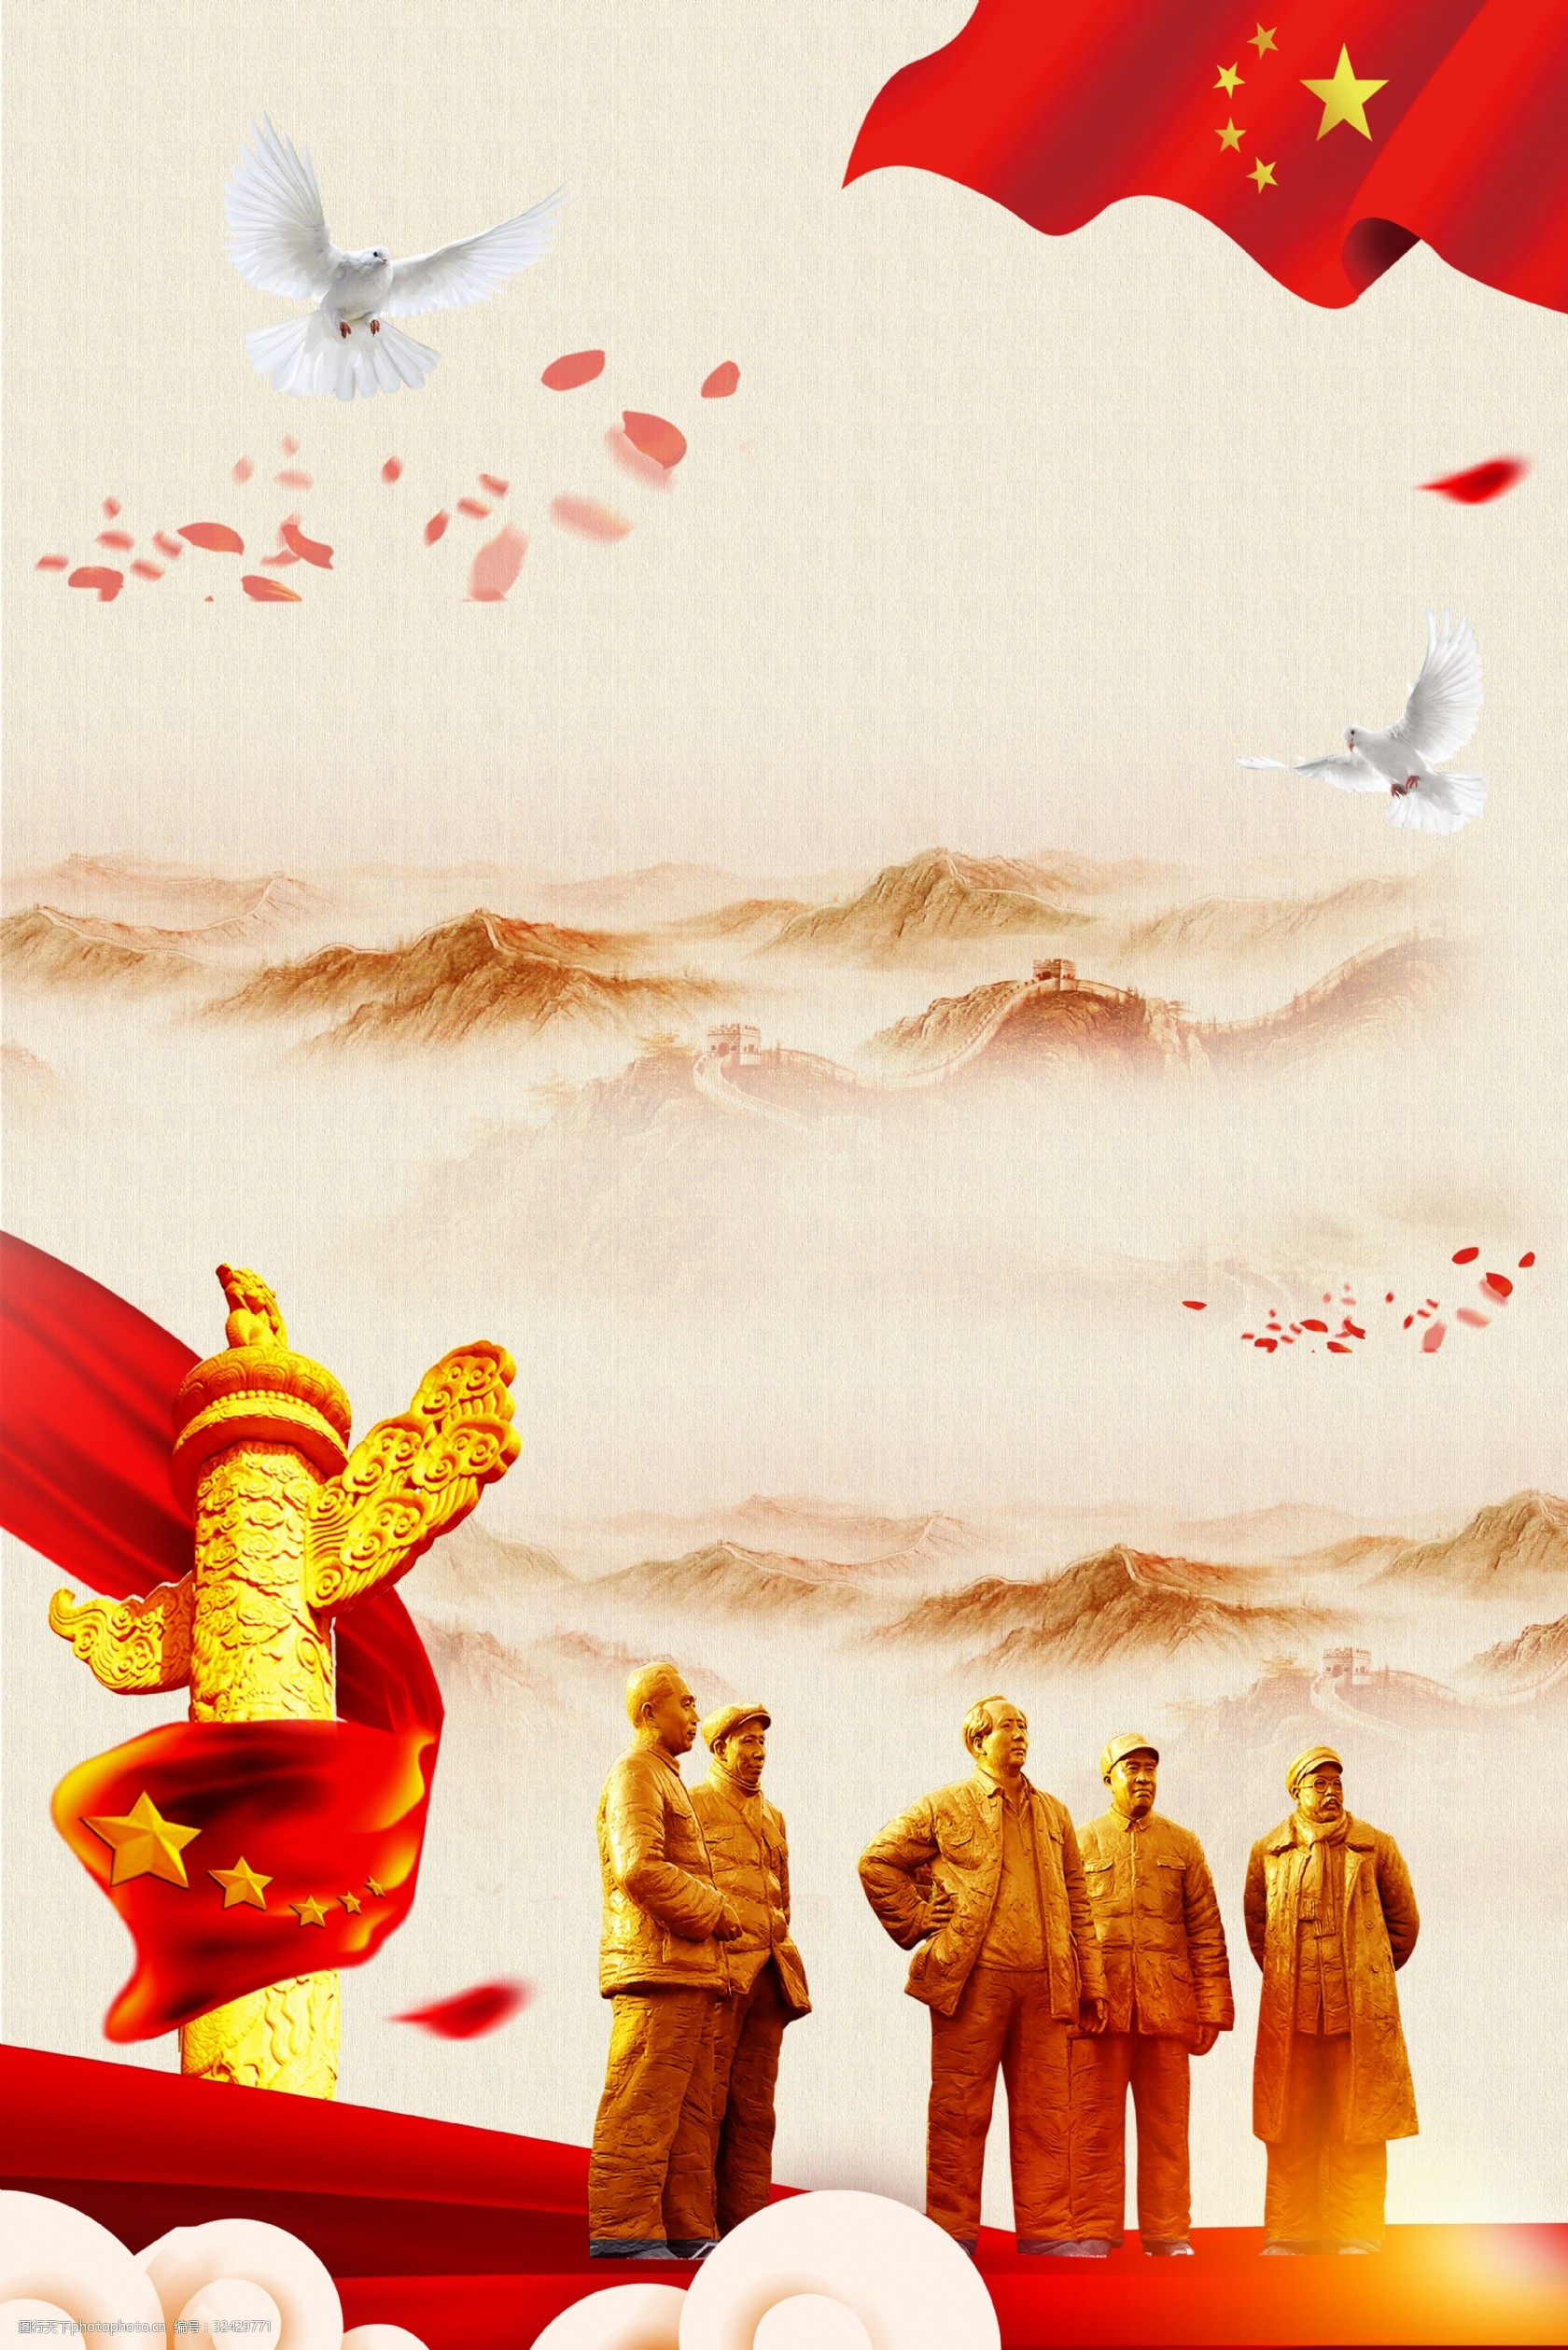 抗日战争胜利73周年海报 抗日 战争 胜利 73周年 中国红 革命 胜利